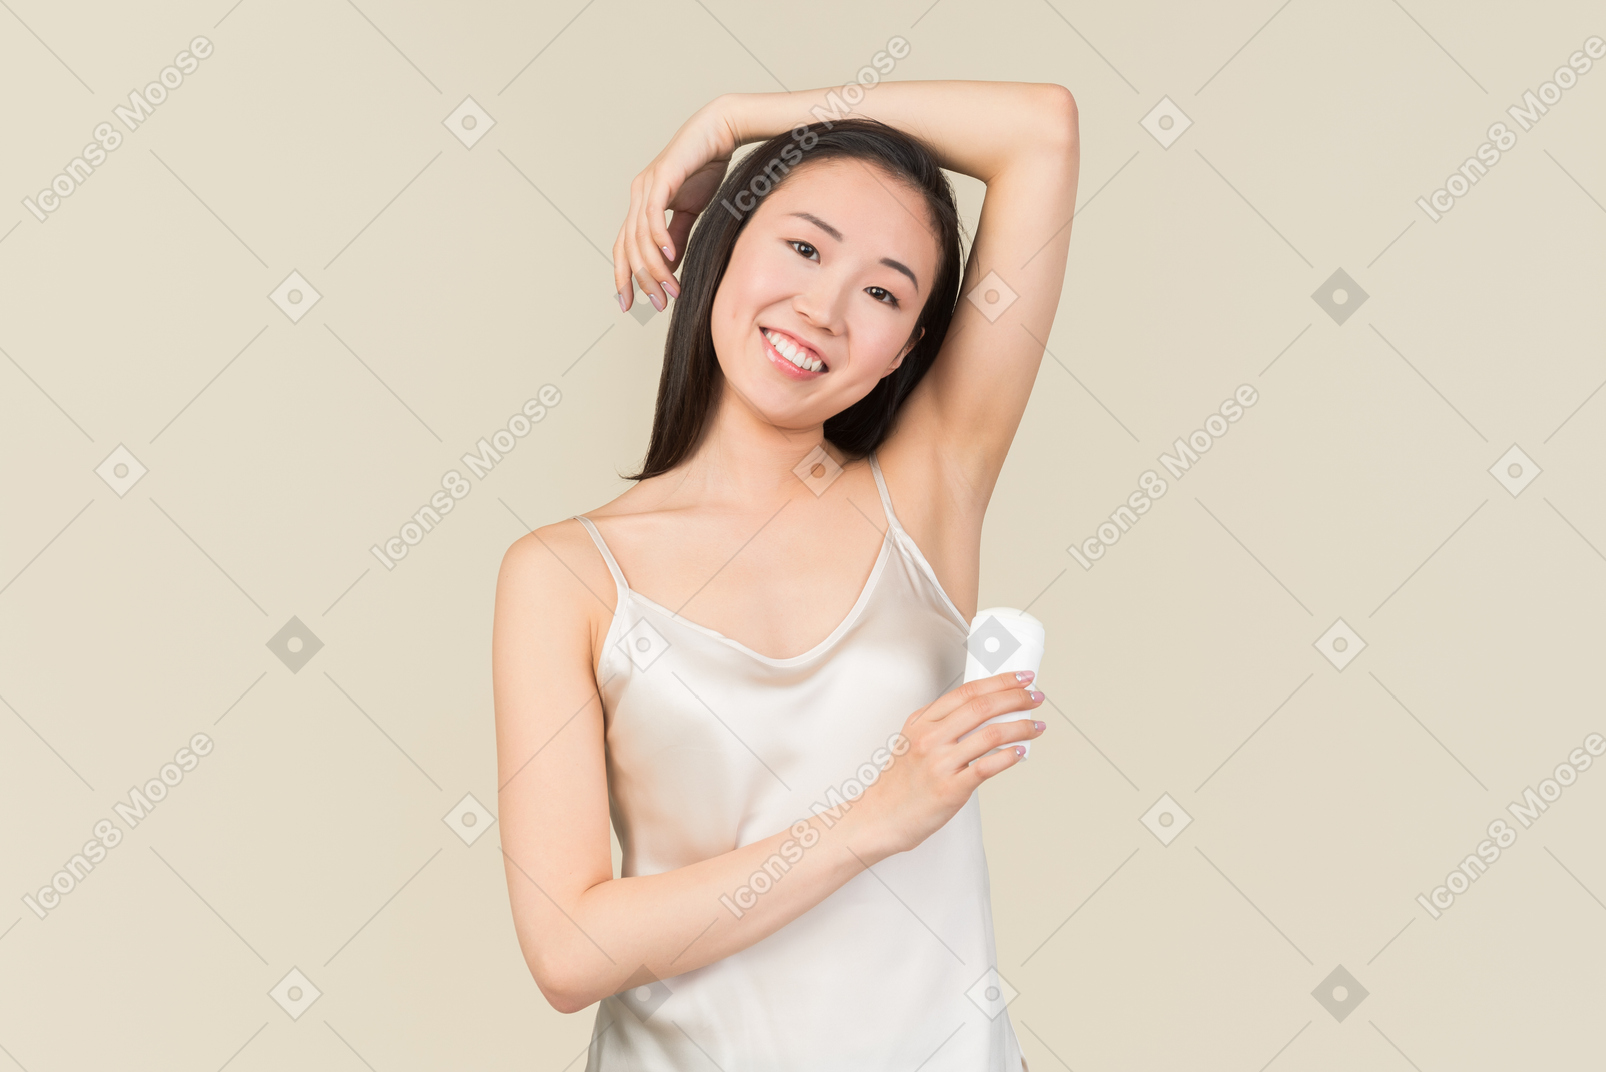 Hübsche asiatische frau deodorant auf achselbereich anwenden